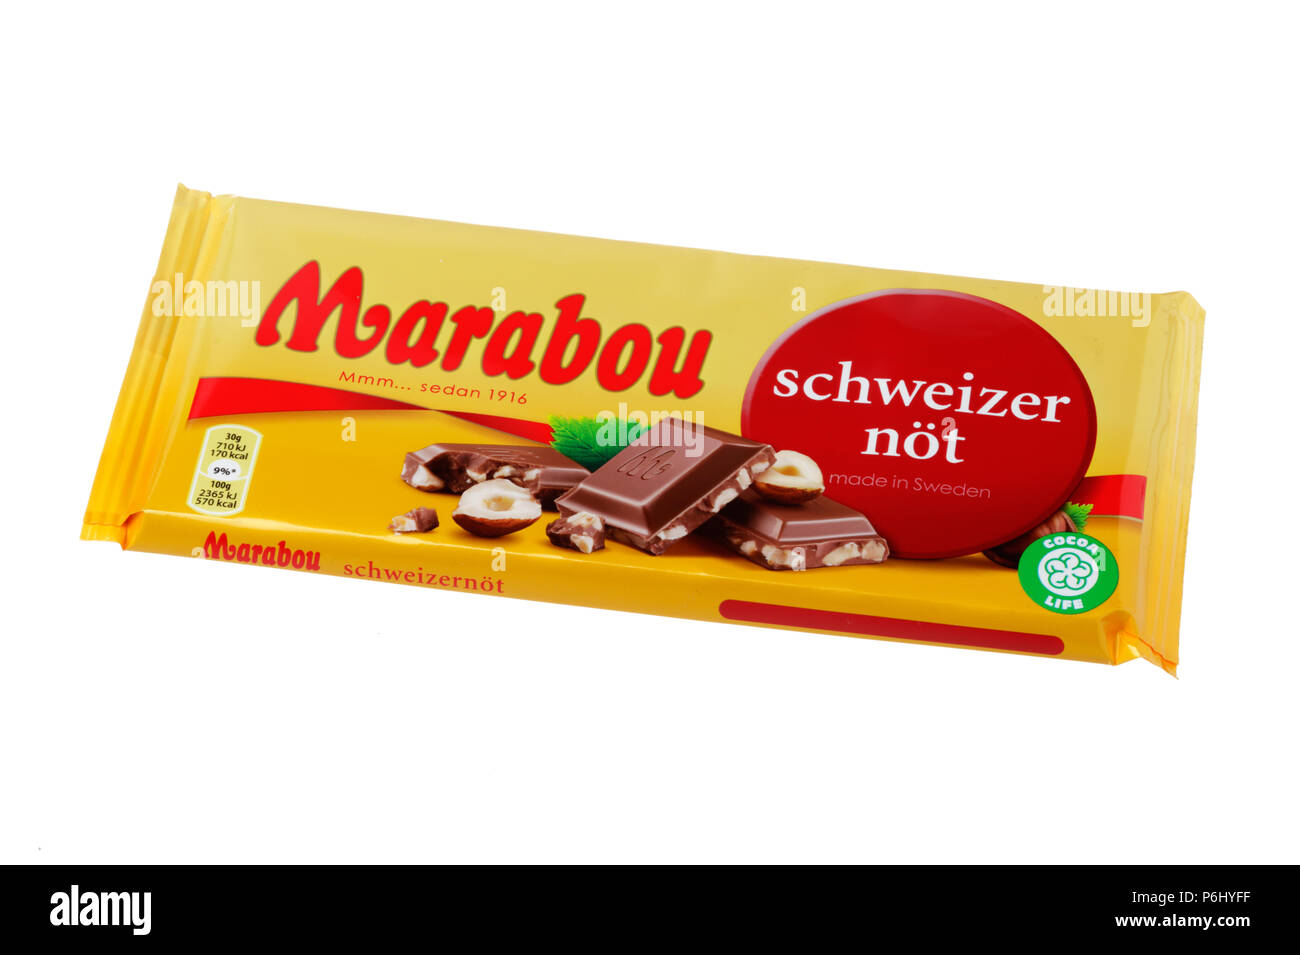 Stoccolma, Svezia - 17 Gennaio 2018: una confezione di Marabou Schweizernot barrette di cioccolato come sembra nel gennaio 2018 isolato su bianco Foto Stock